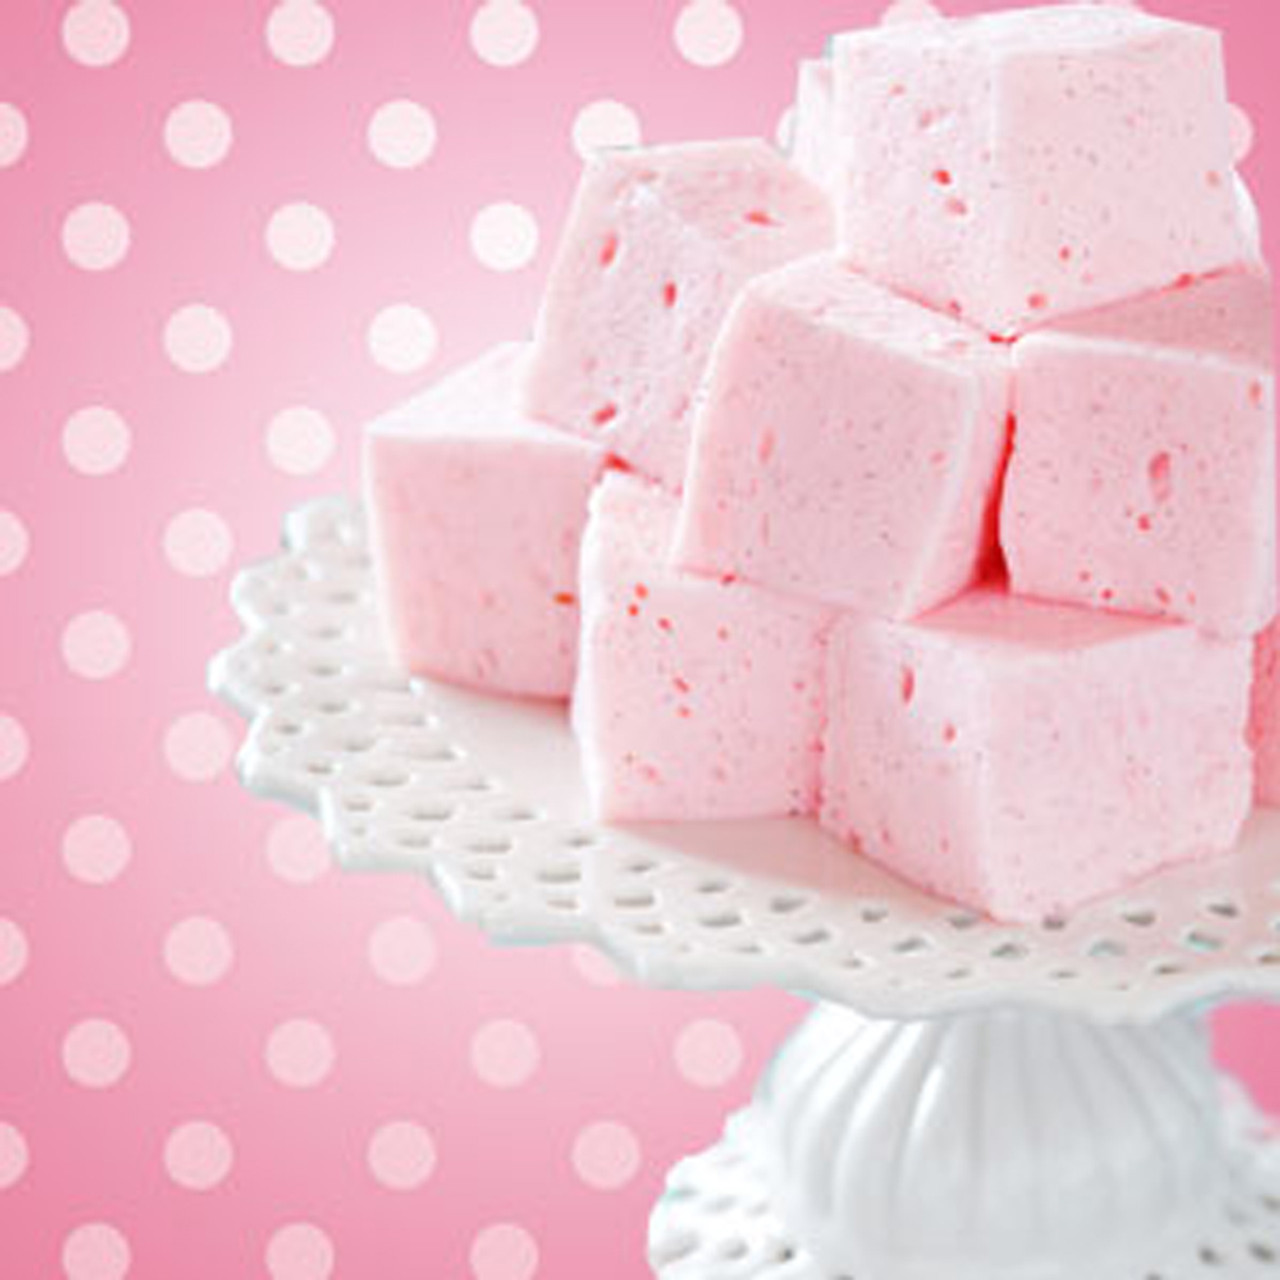 Compare Aroma to Pink Sugar®